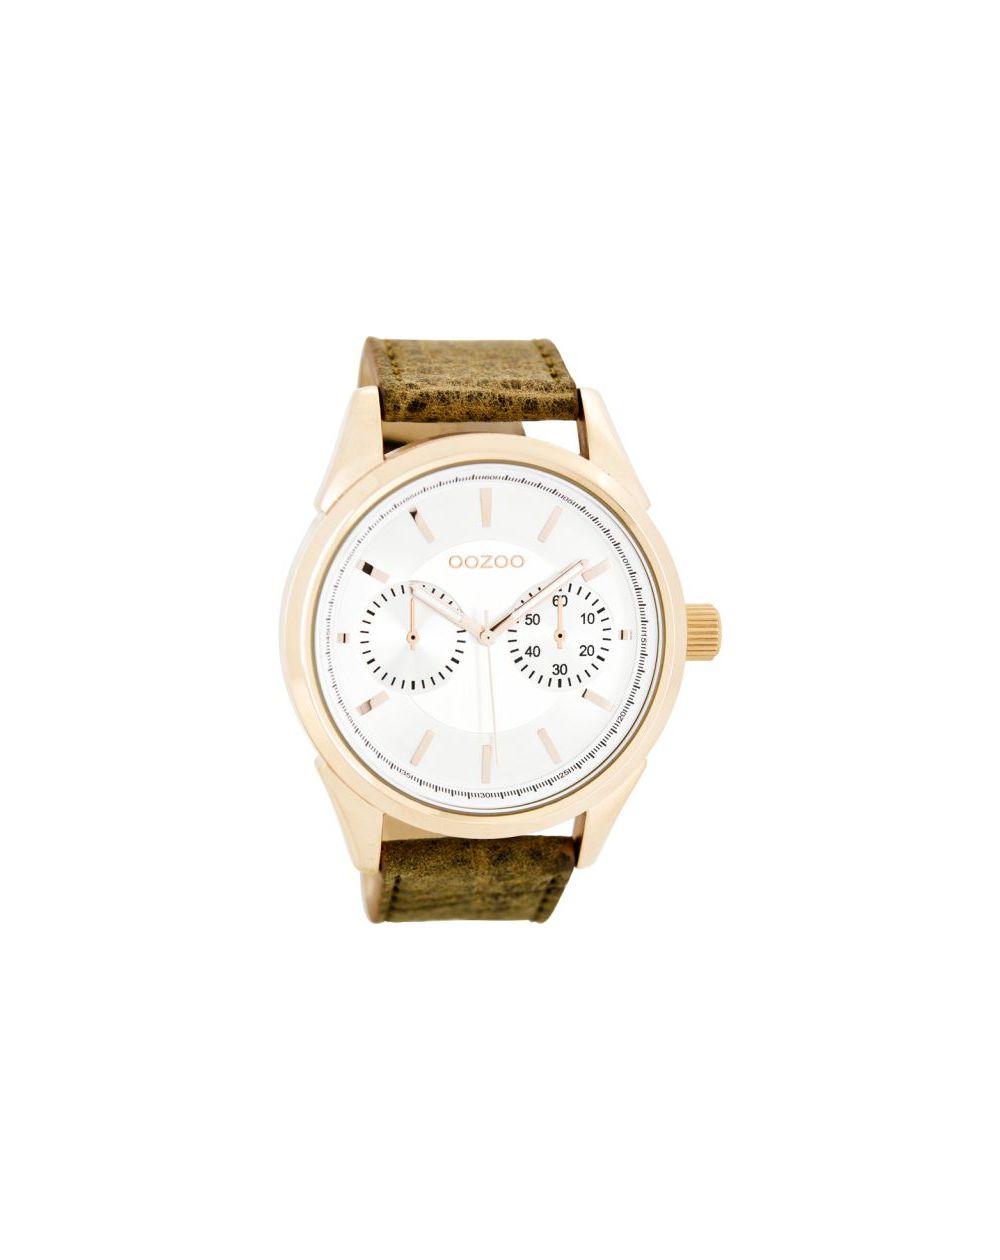 Oozoo montre/watch/horloge C8590